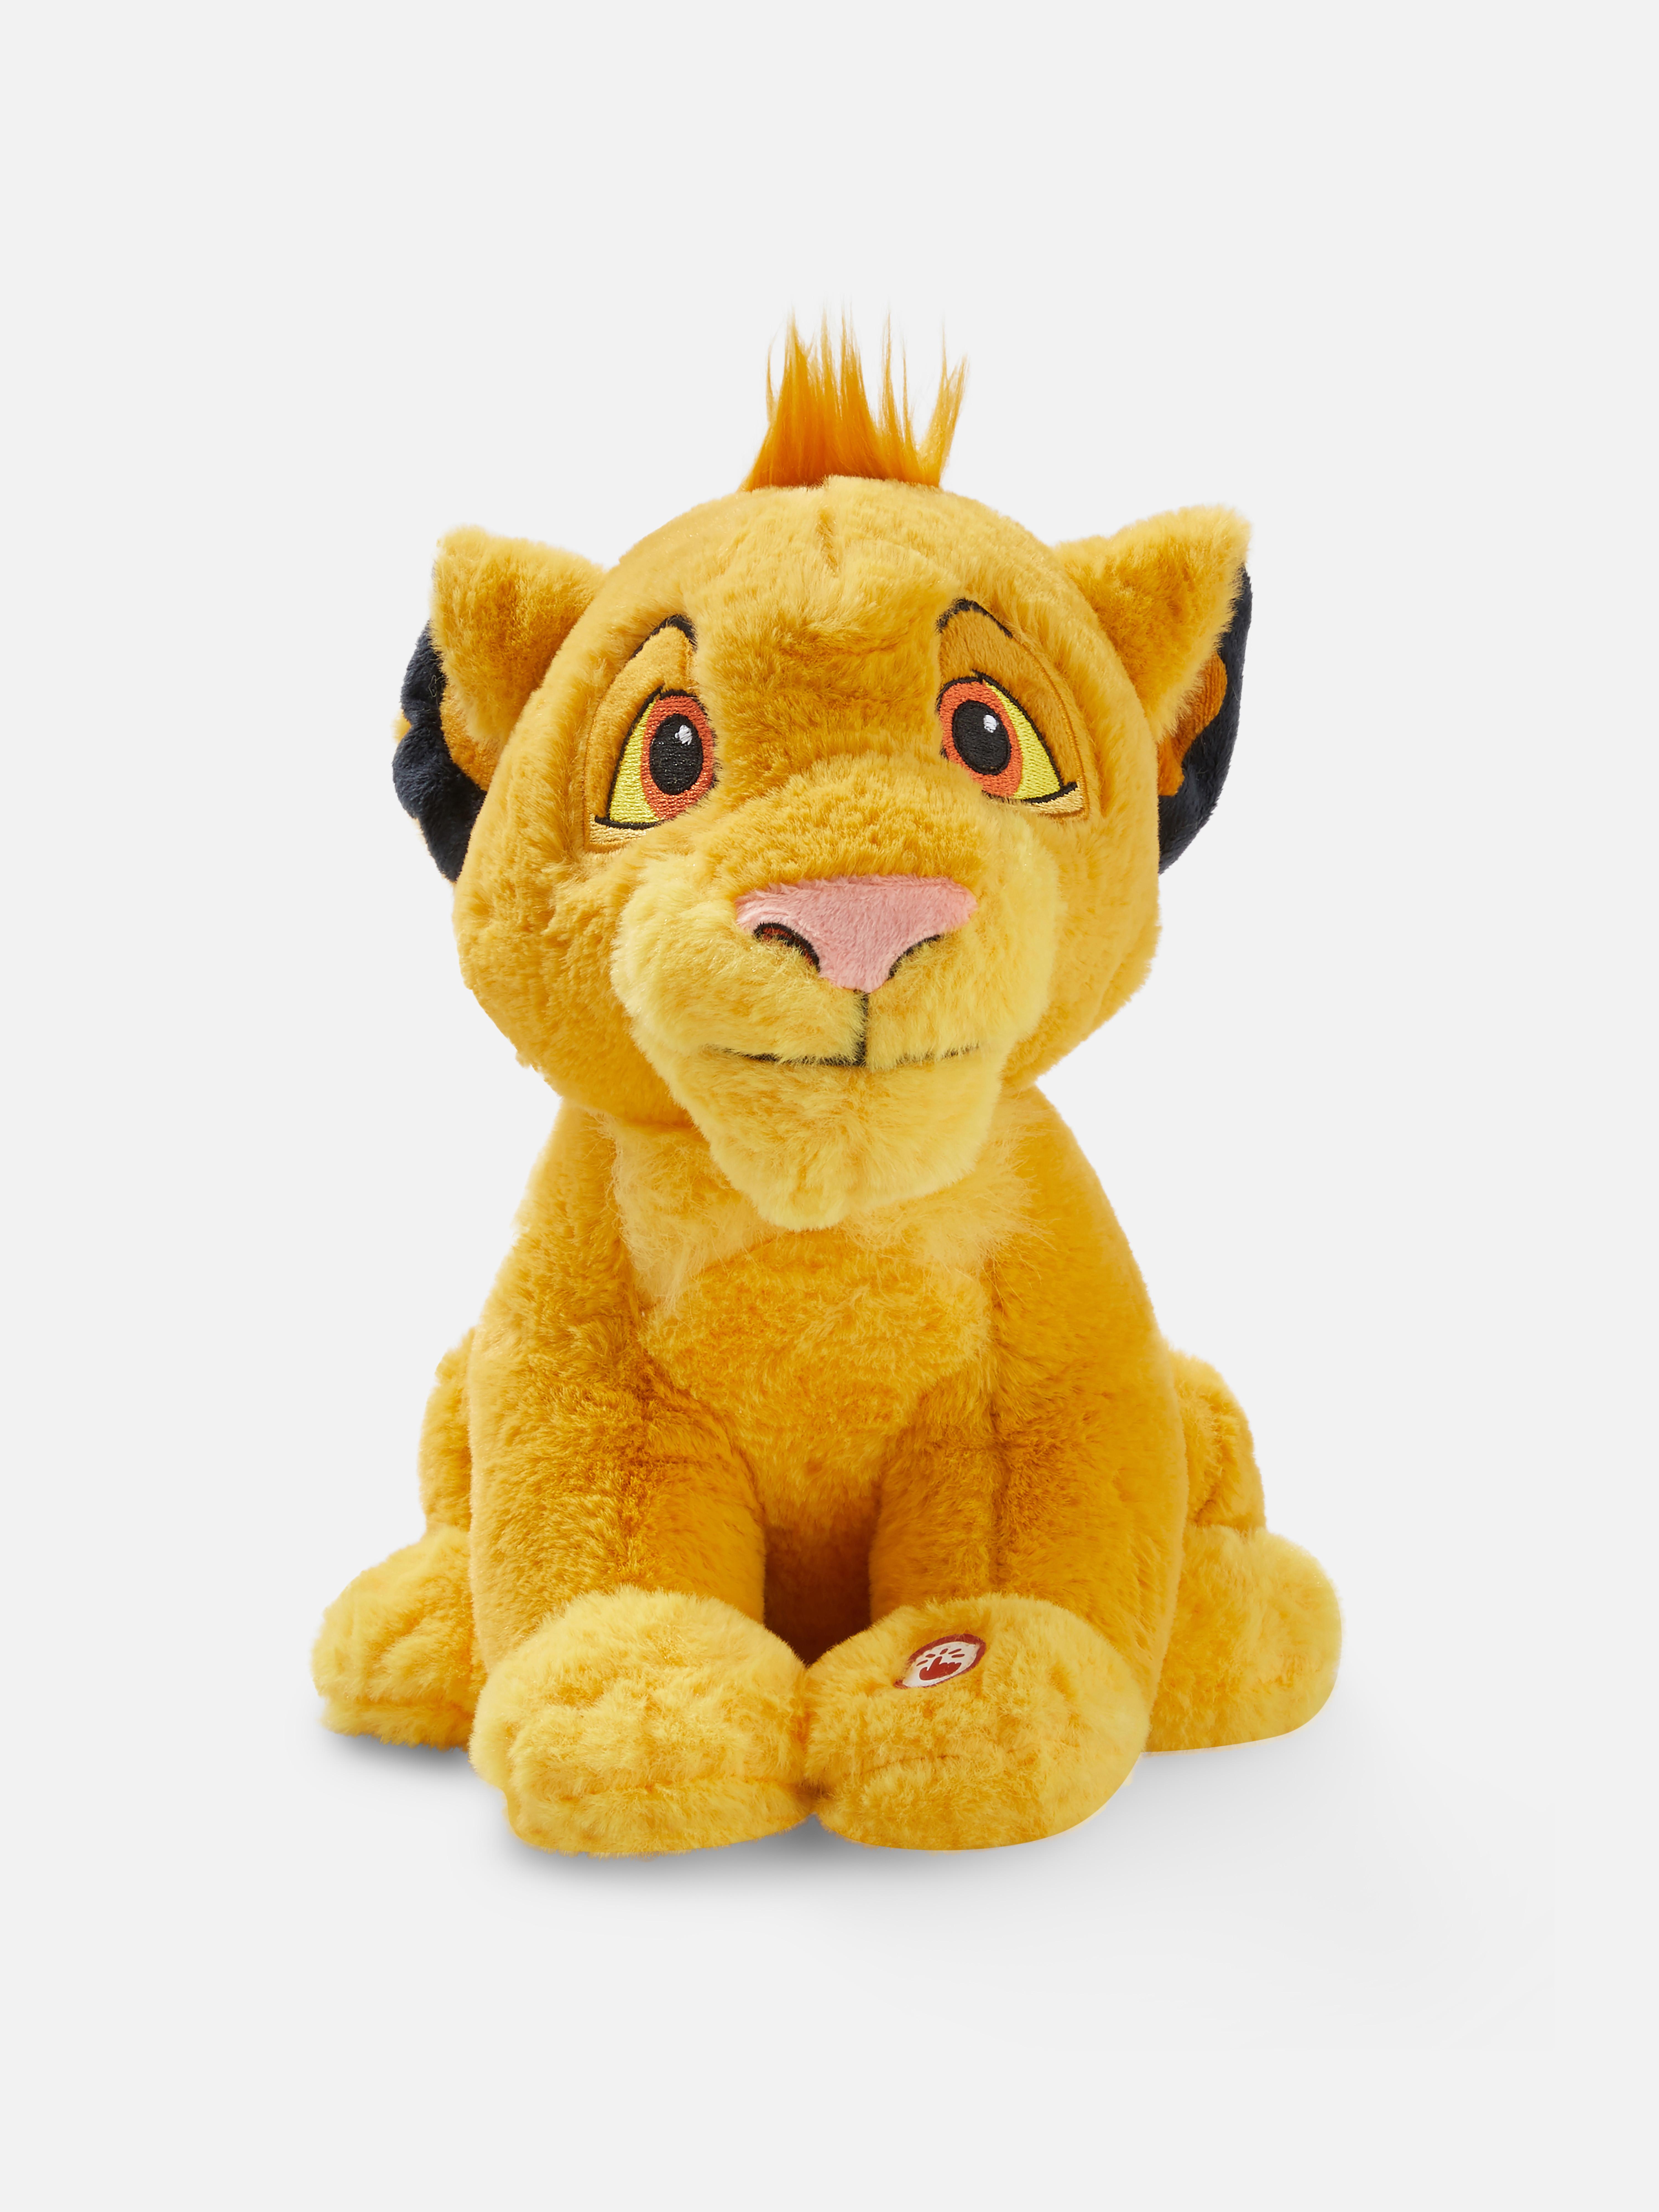 Disney's The Lion King Simba Plush Toy